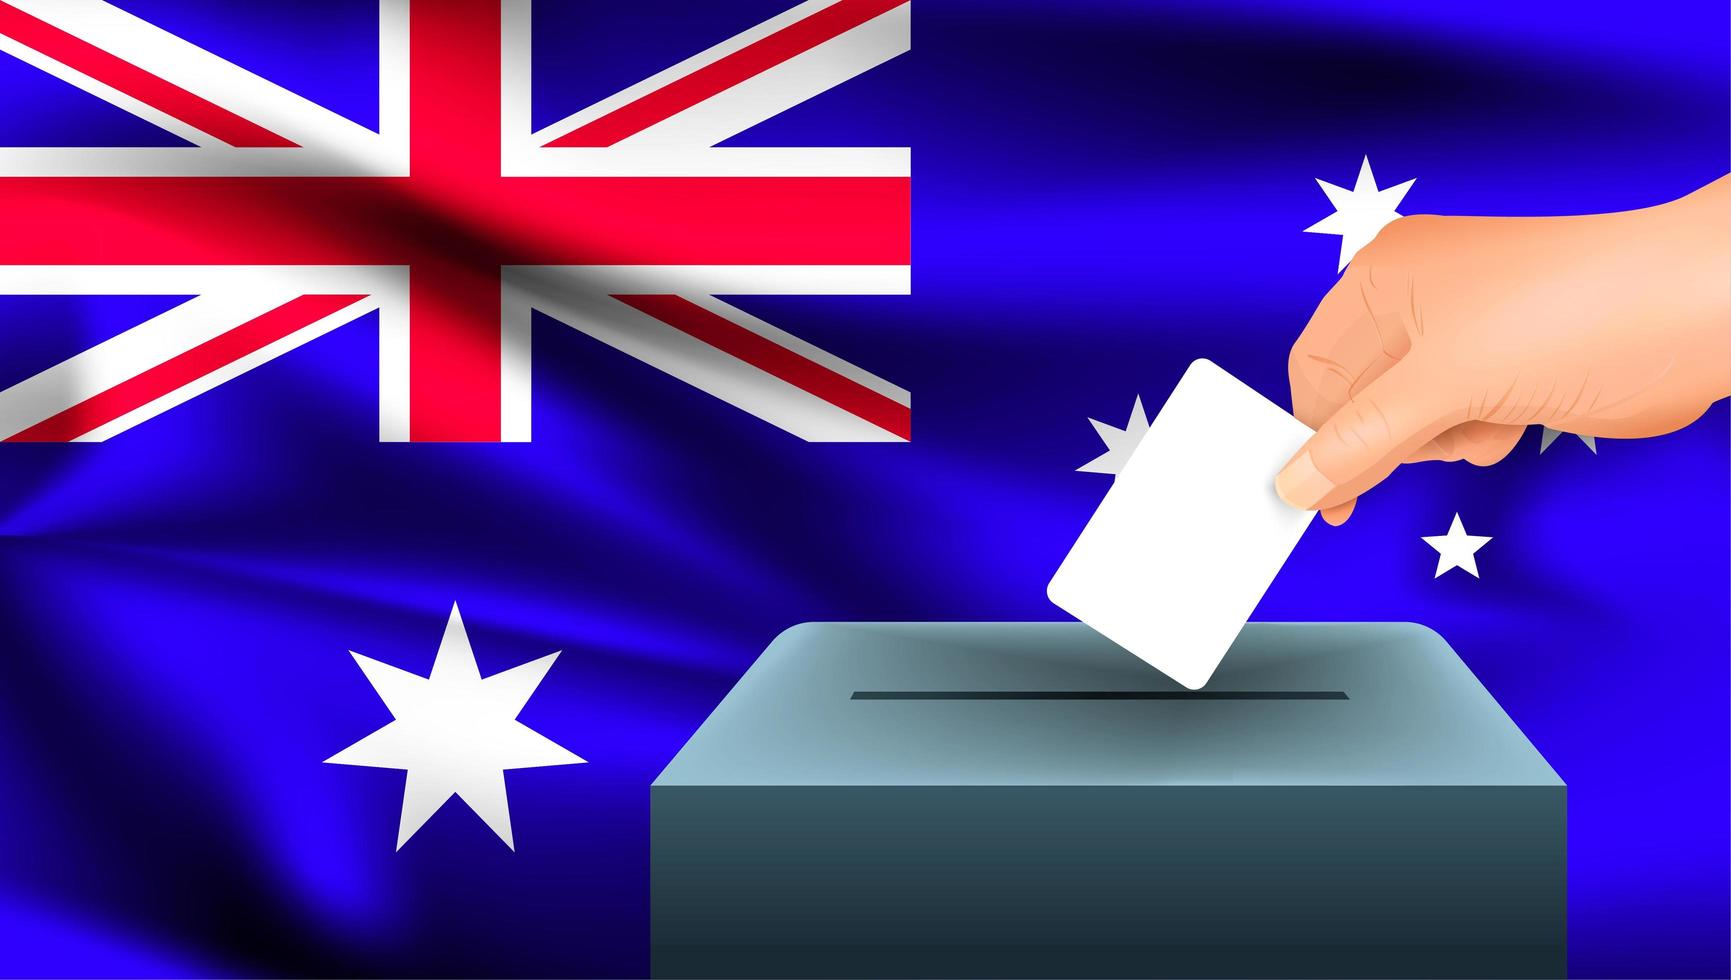 mão colocando a cédula na urna com a bandeira australiana vetor